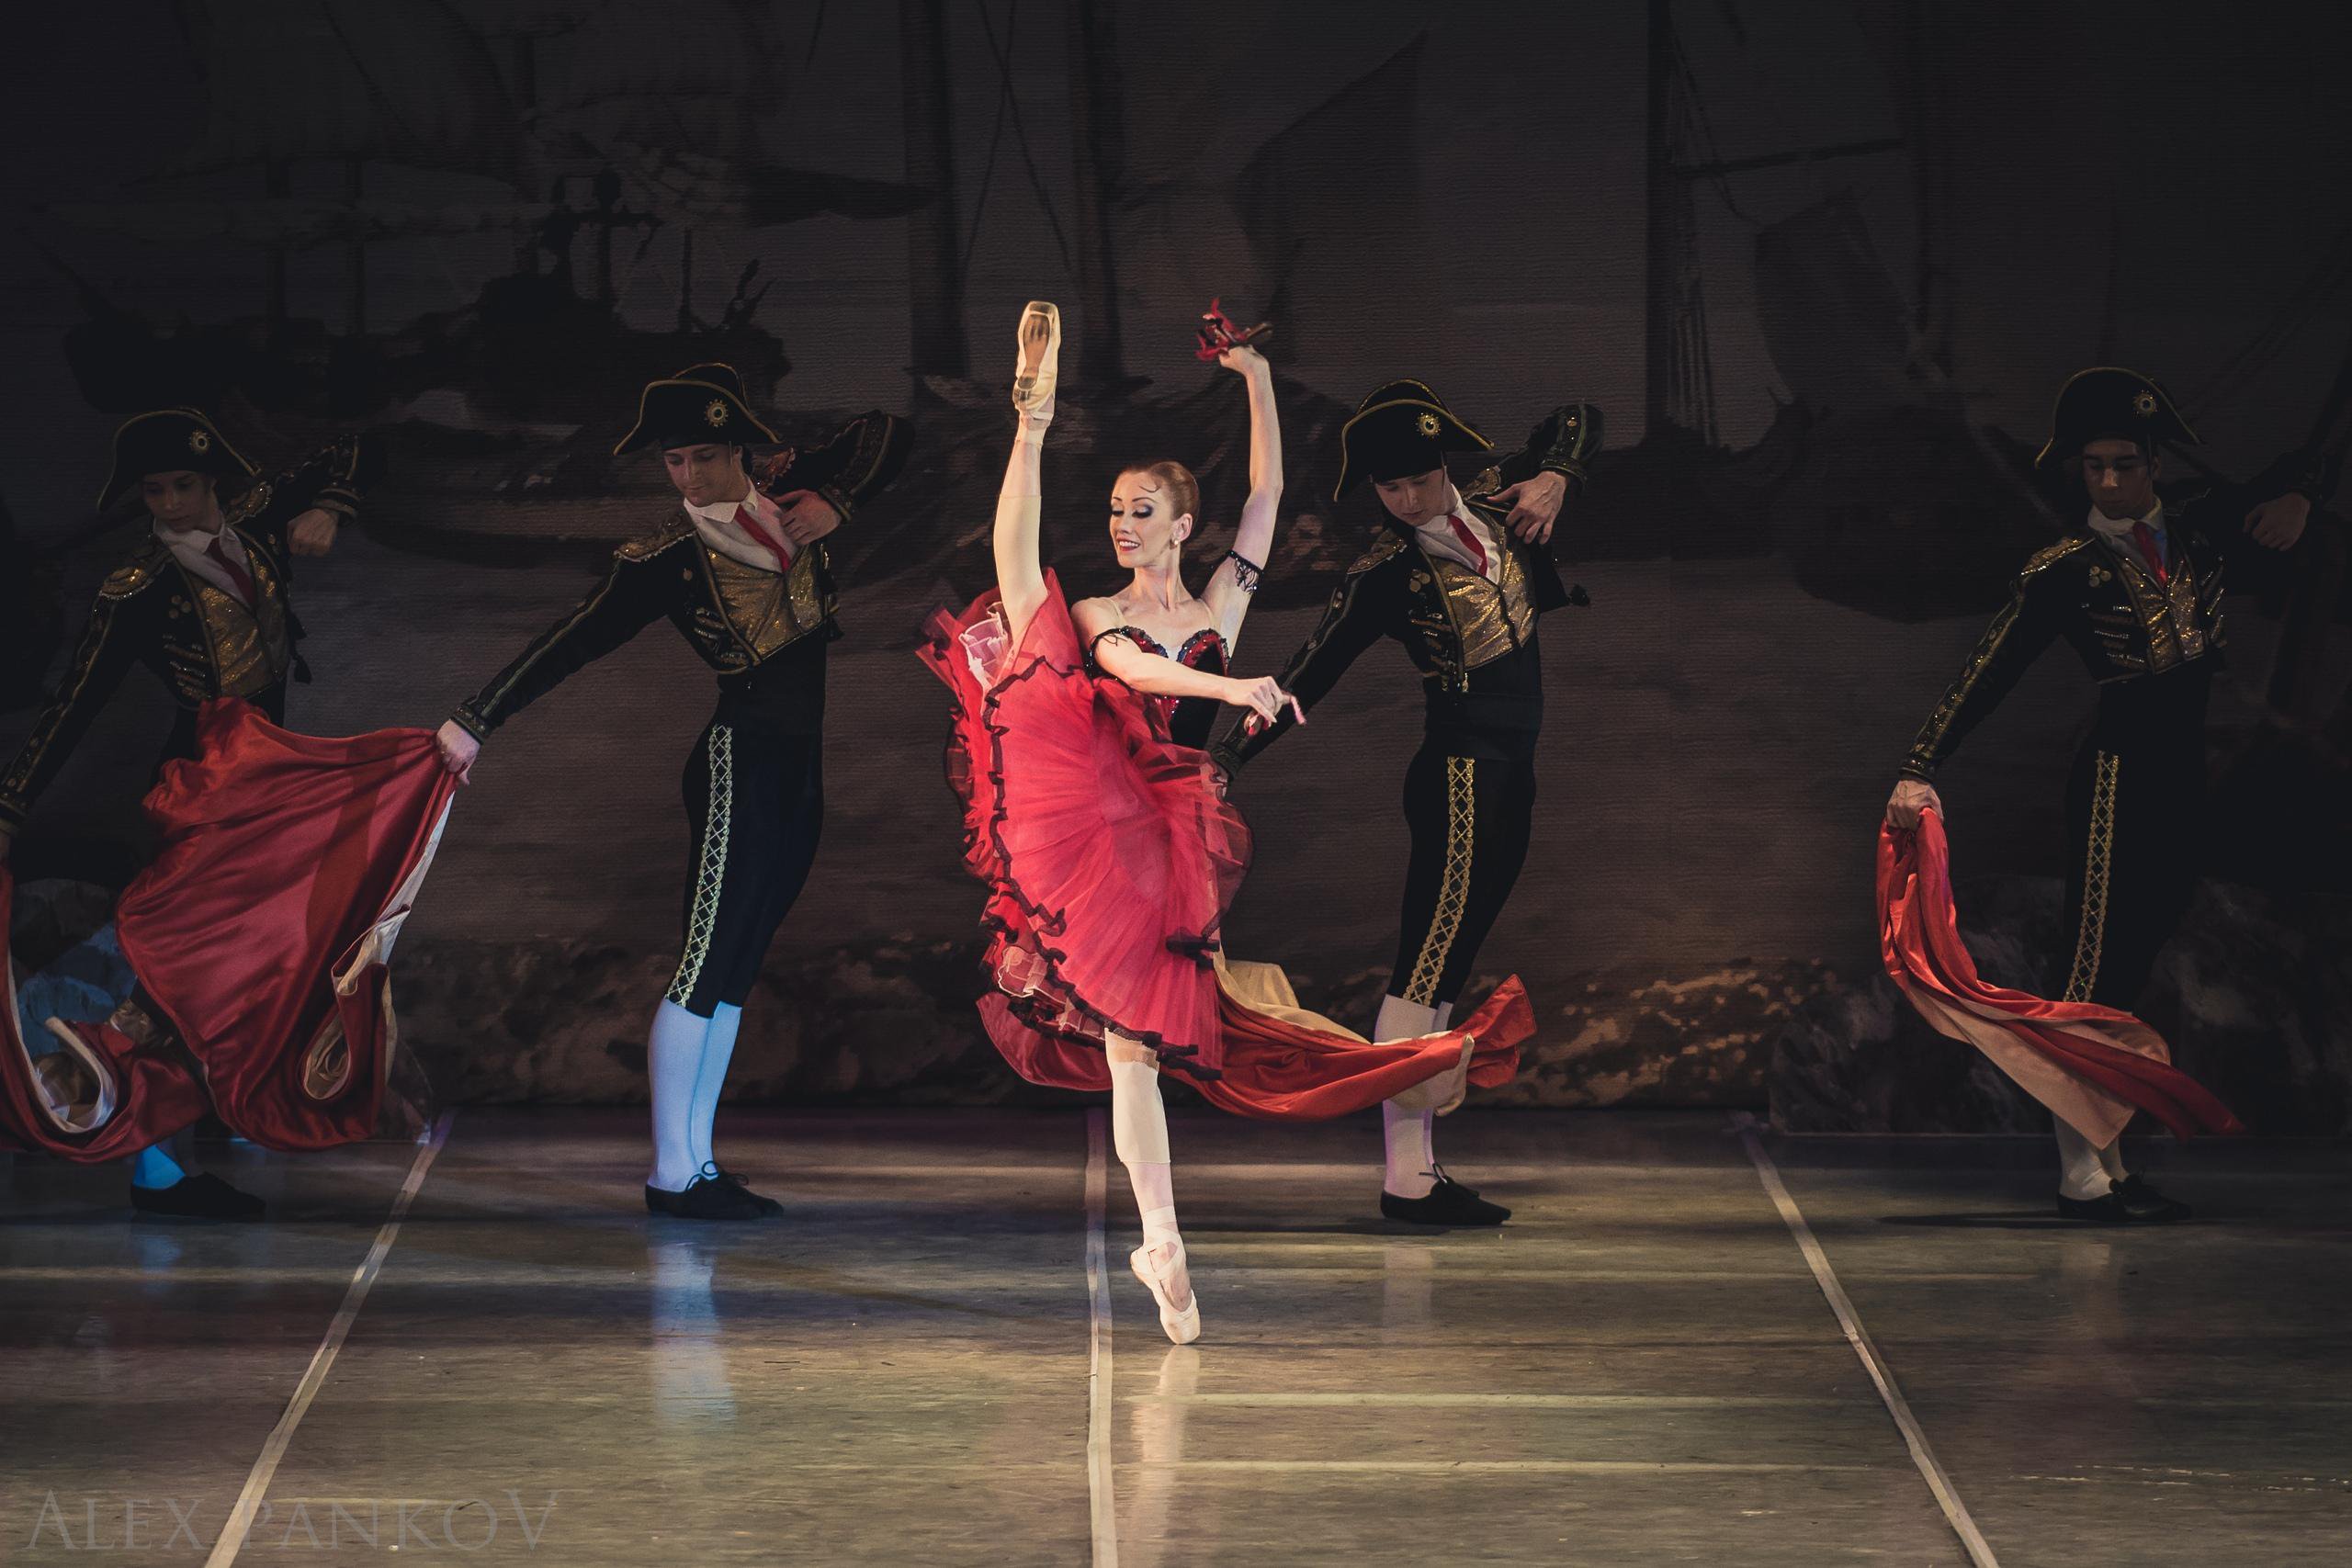 Государственный академический театр классического балета Н. Касаткиной и В. Василёва, Скаковая, 3